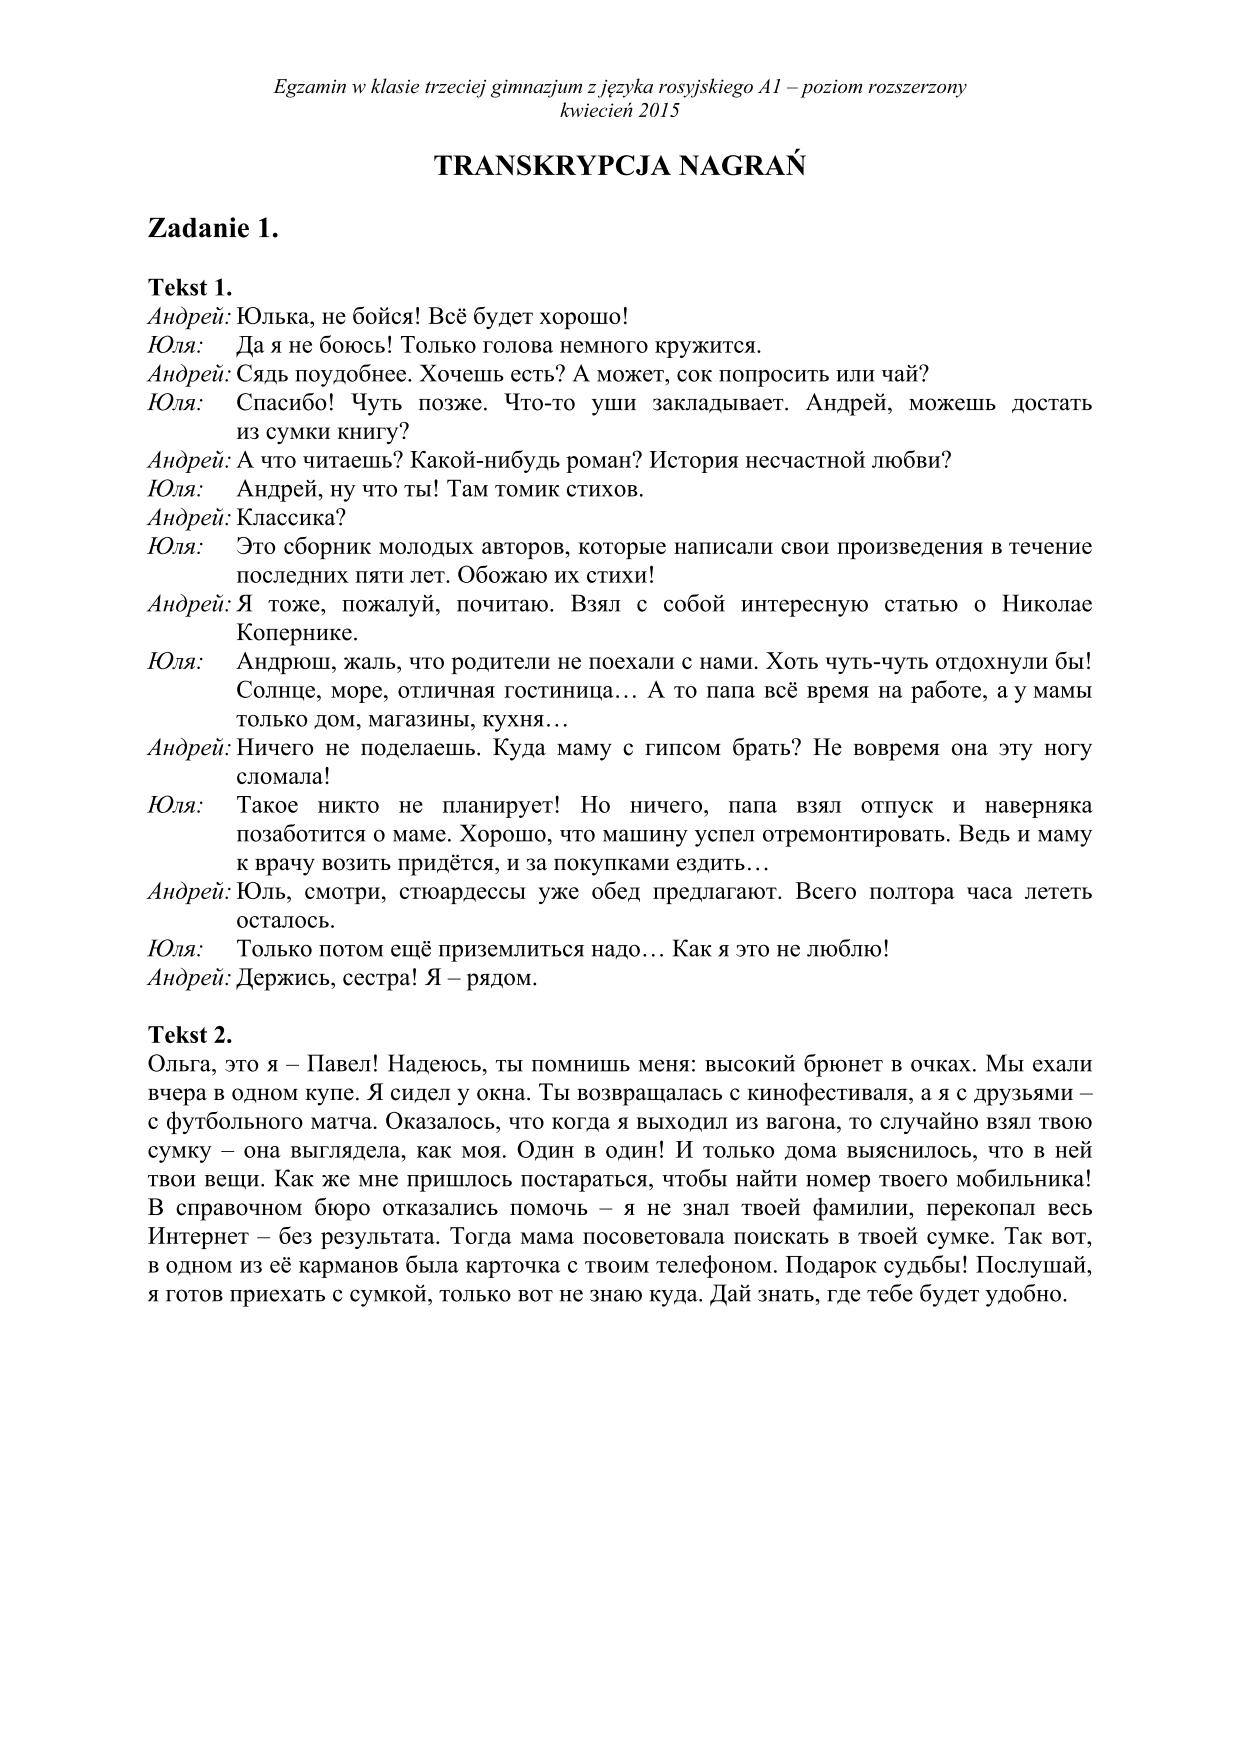 transkrypcja-rosyjski-poziom-rozszerzony-egzamin-gimnazjalny-2015-1